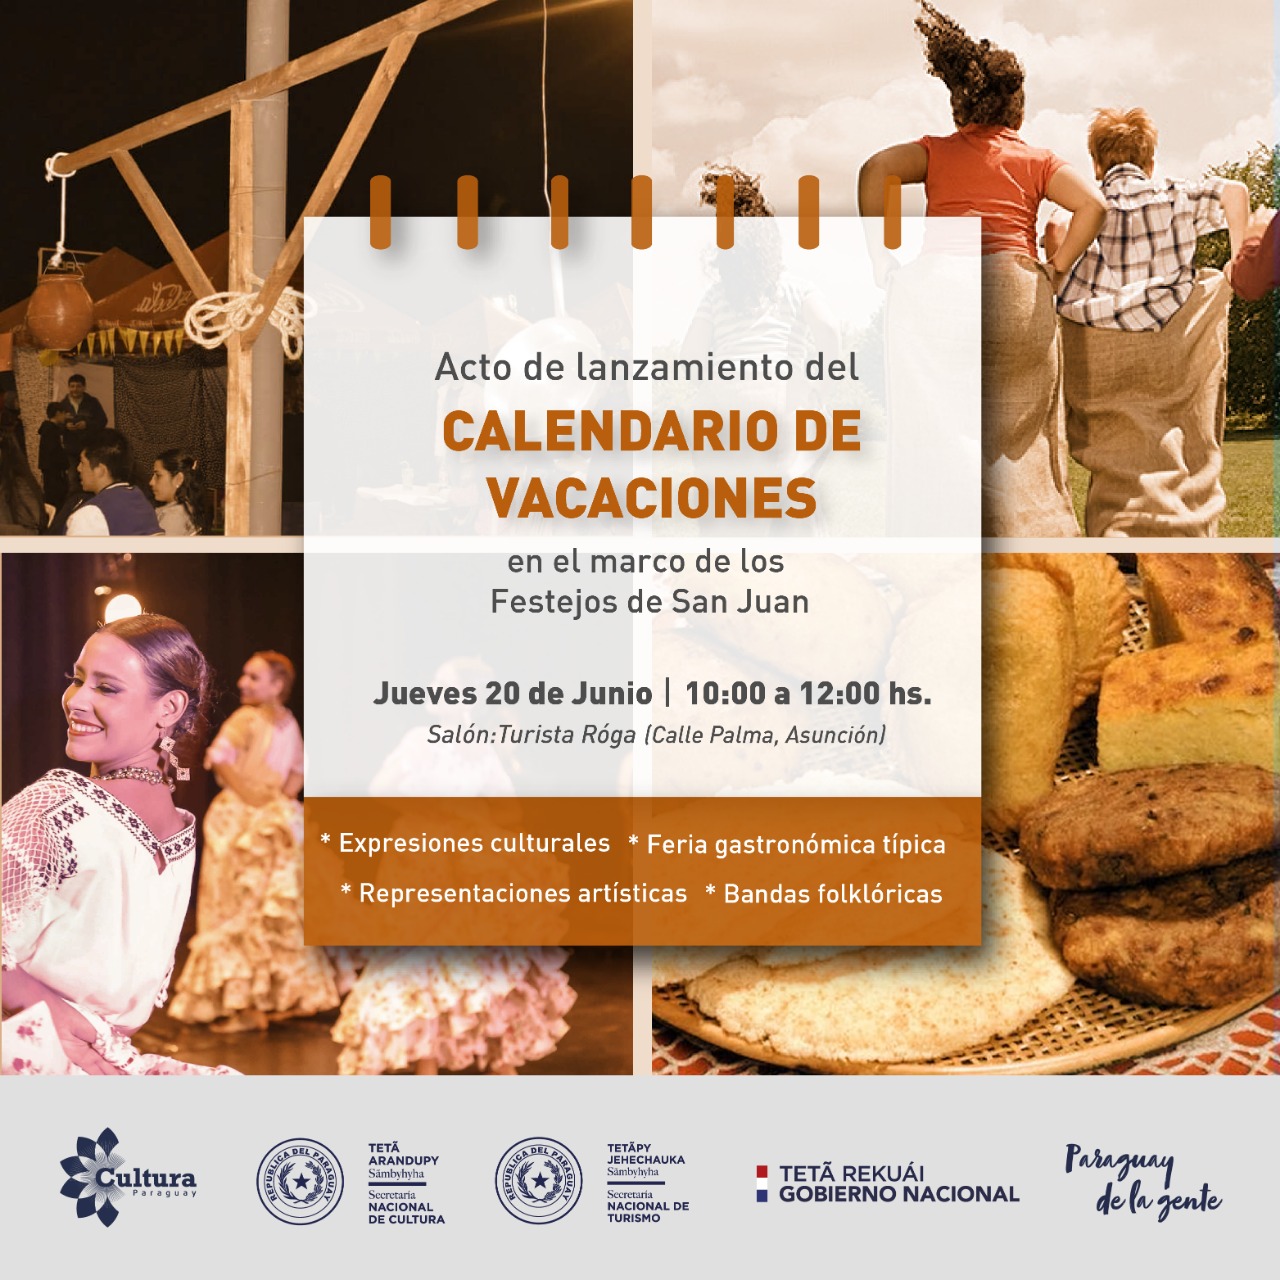 Espacios y Centros Culturales participarán de la presentación del Calendario de Vacaciones imagen